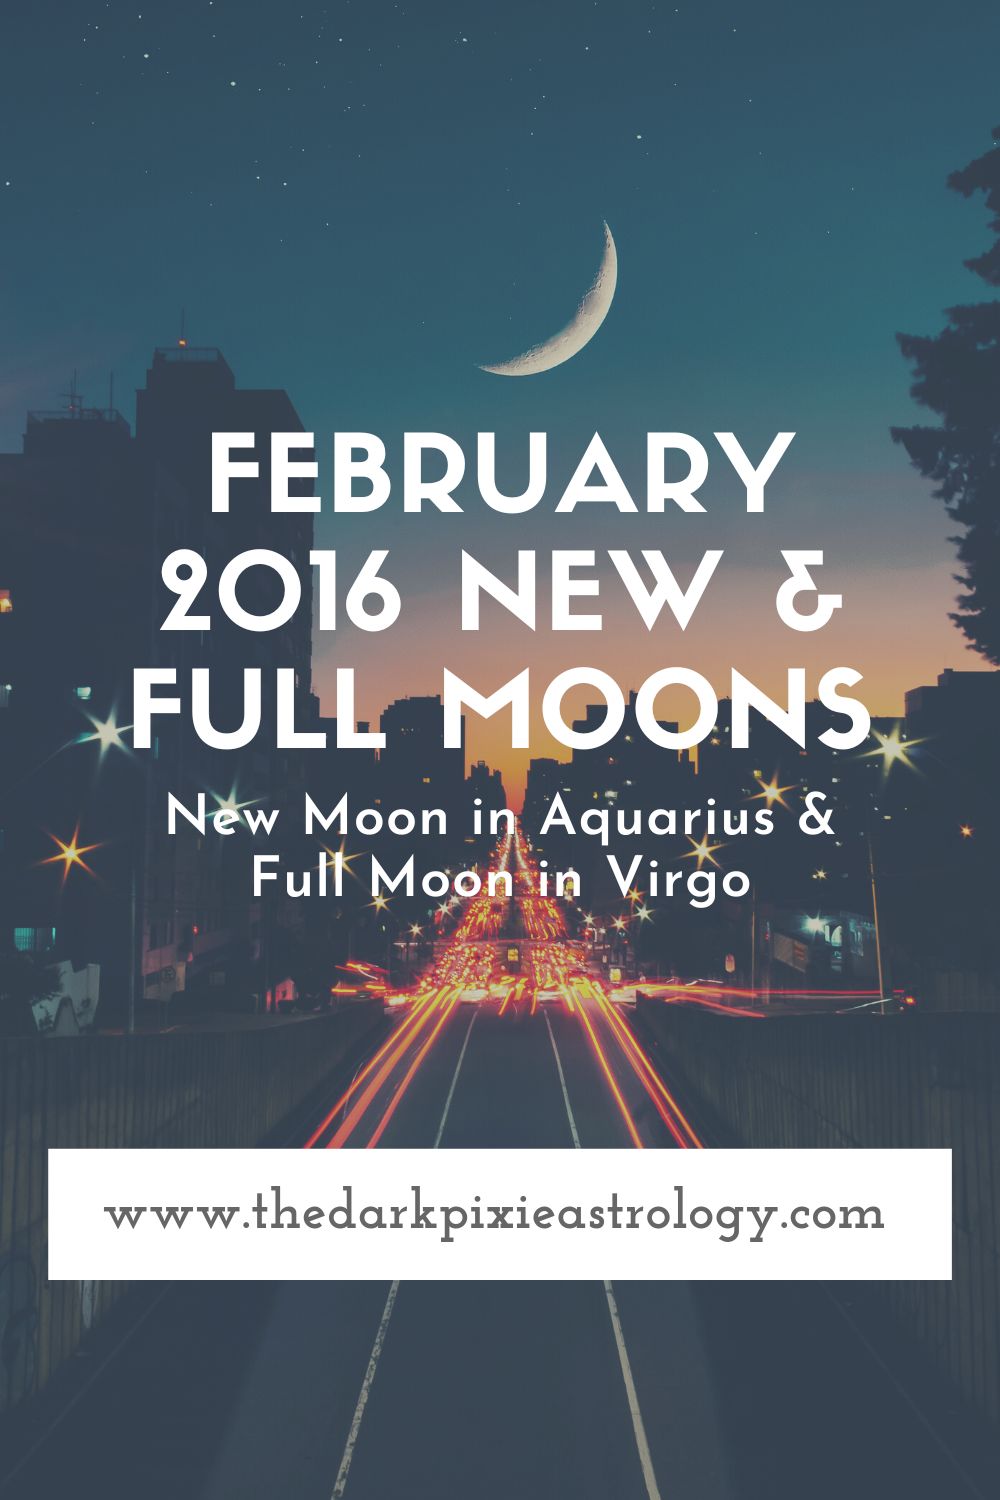 February 2016 New & Full Moons - The Dark Pixie Astrology